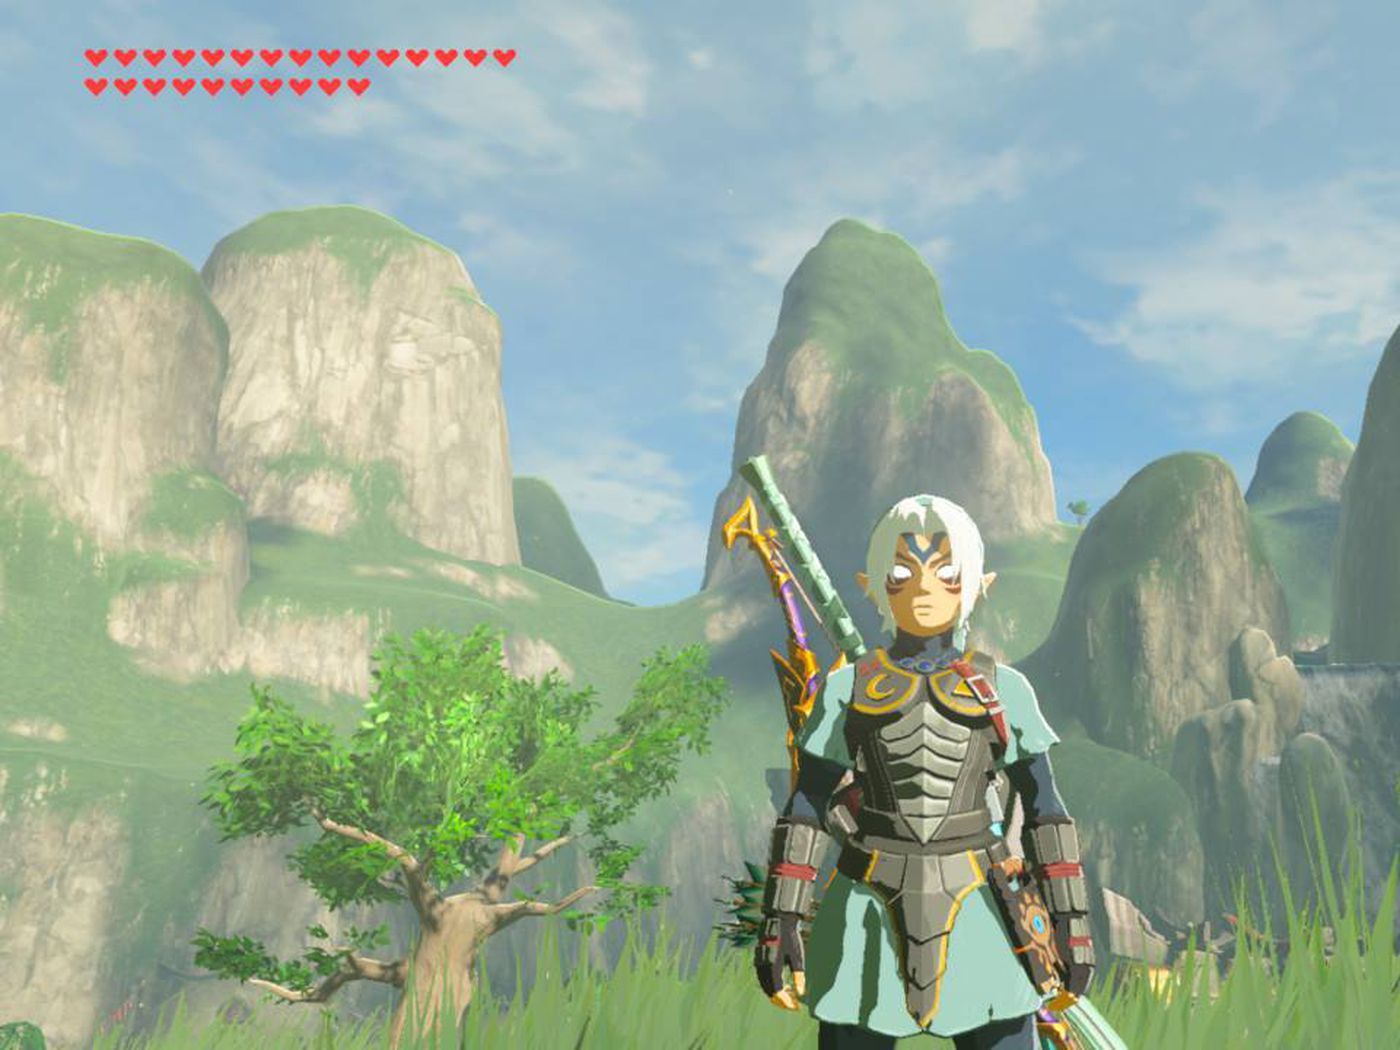 Nintendo's new Zelda amiibo explains Breath of the Wild's